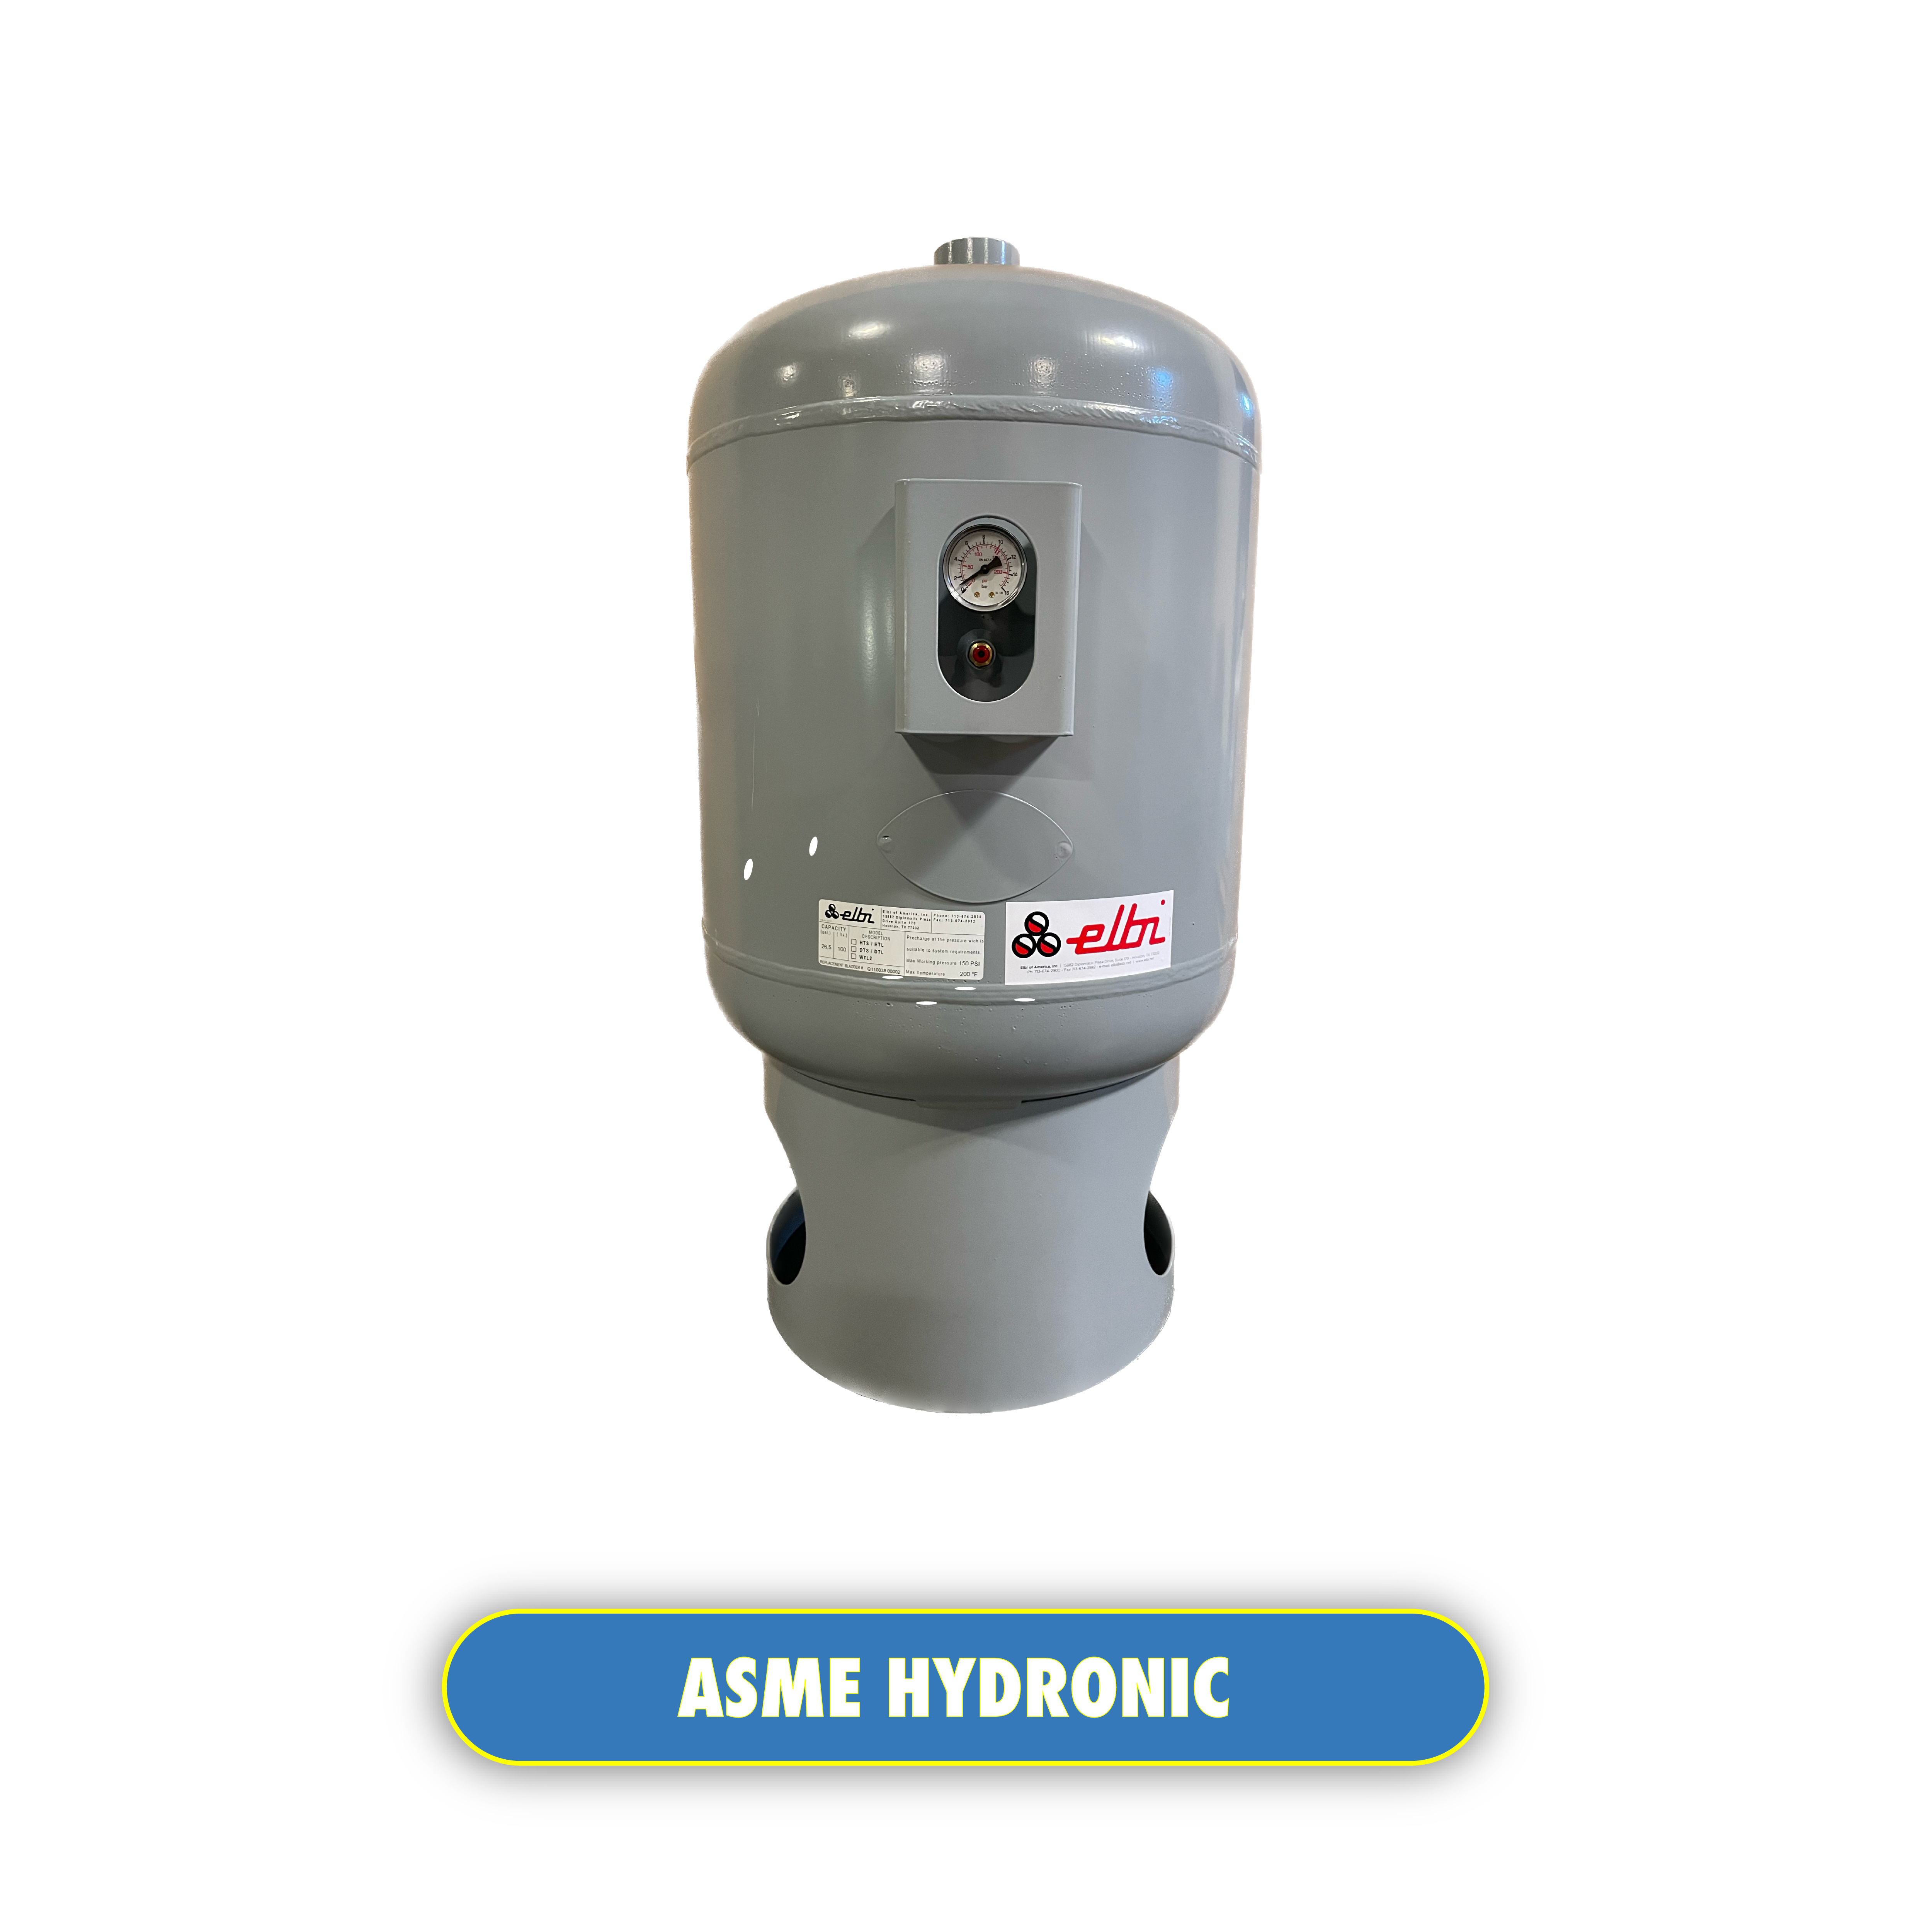 ASME Hydronic tanks